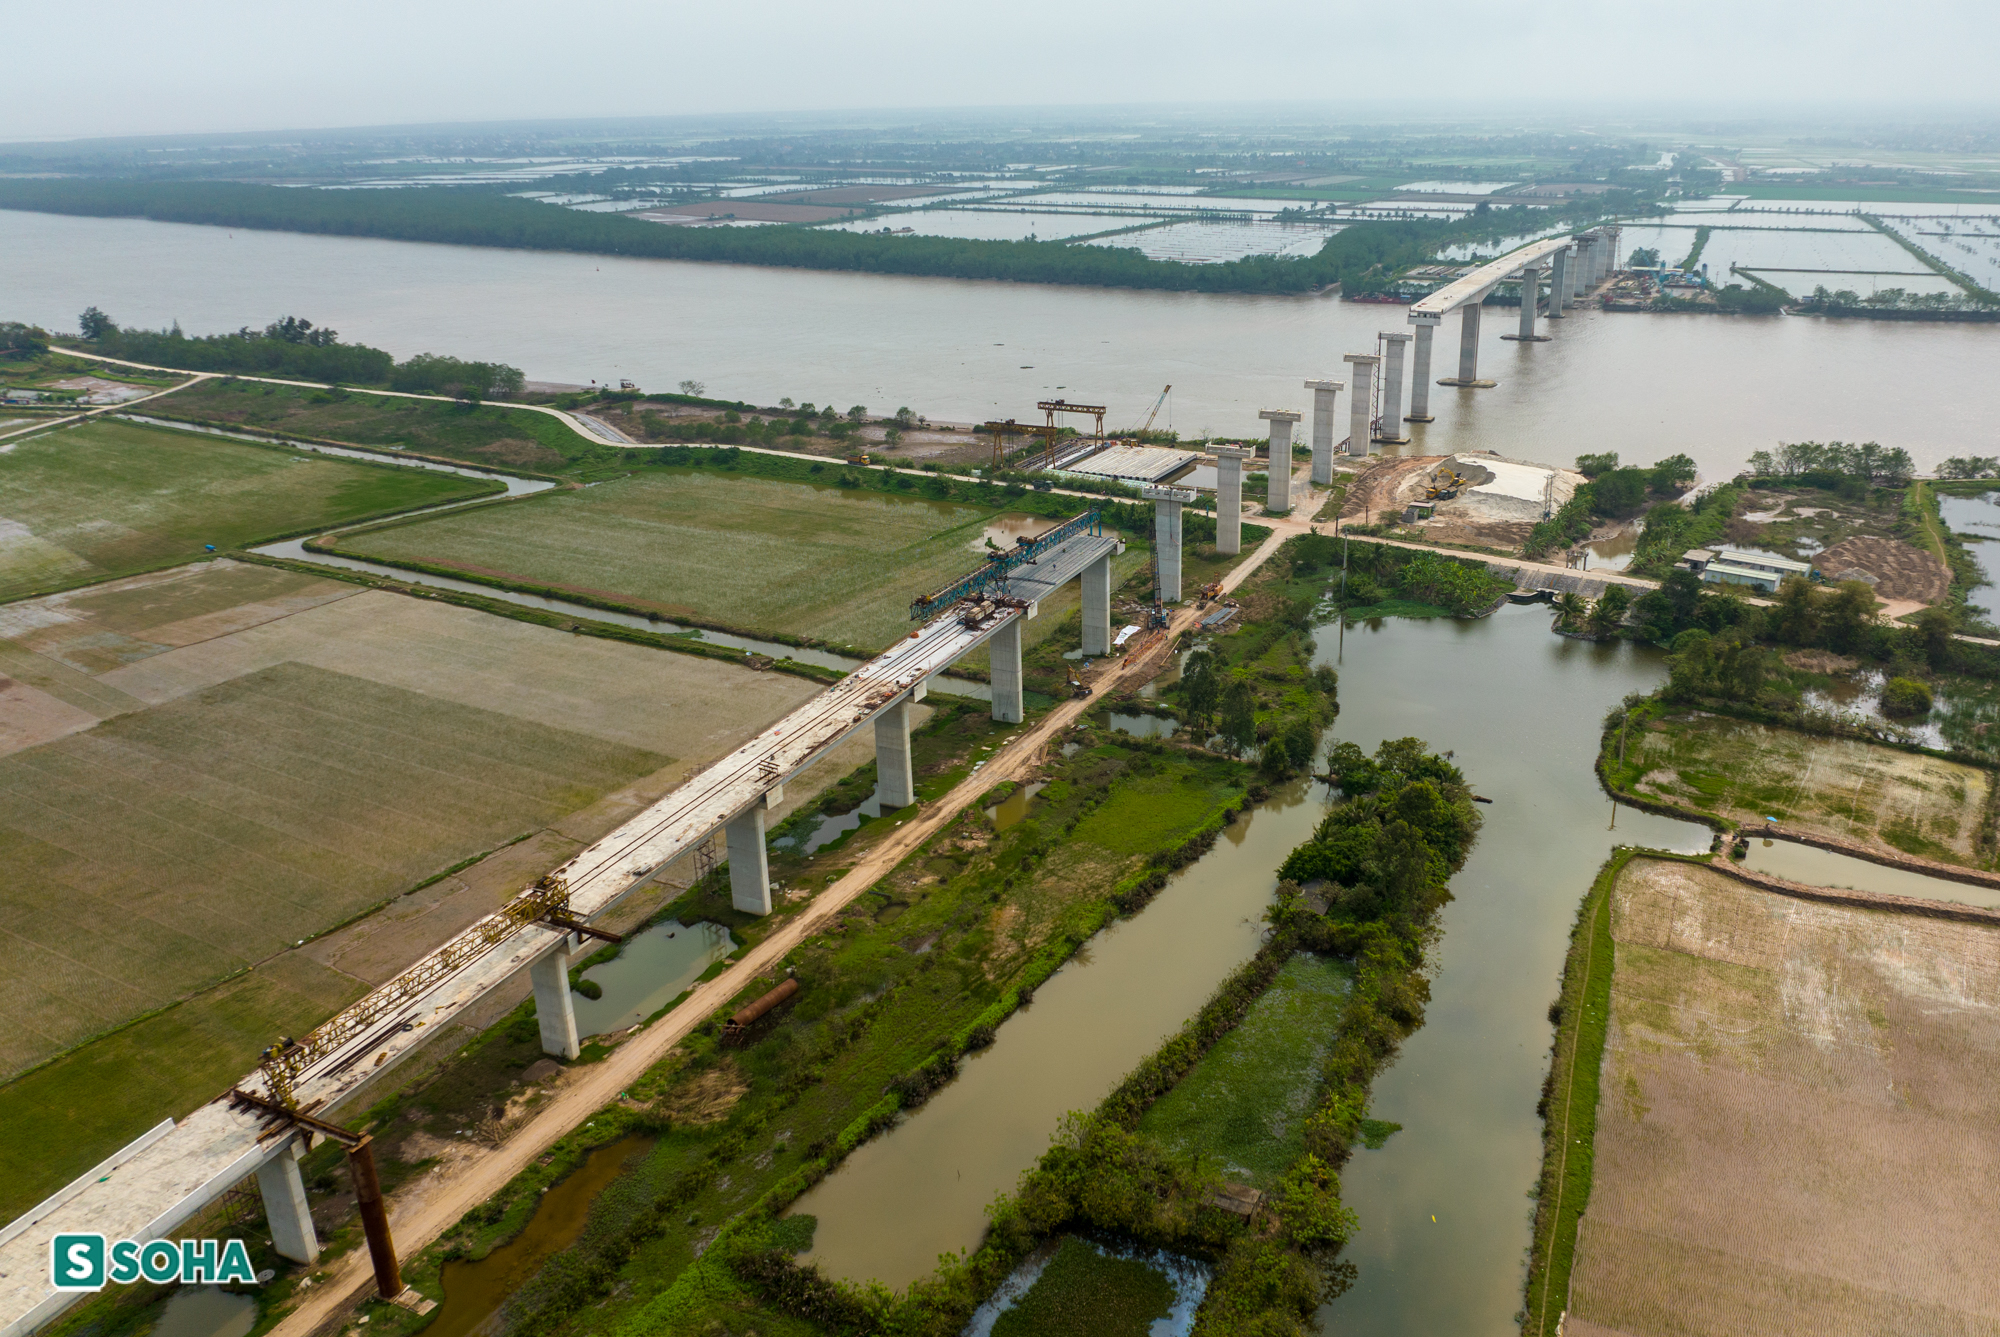  Đường bộ ven biển nối Hải Phòng - Thái Bình trị giá gần 4.000 tỷ làm 5 năm mới xong 2km - Ảnh 8.